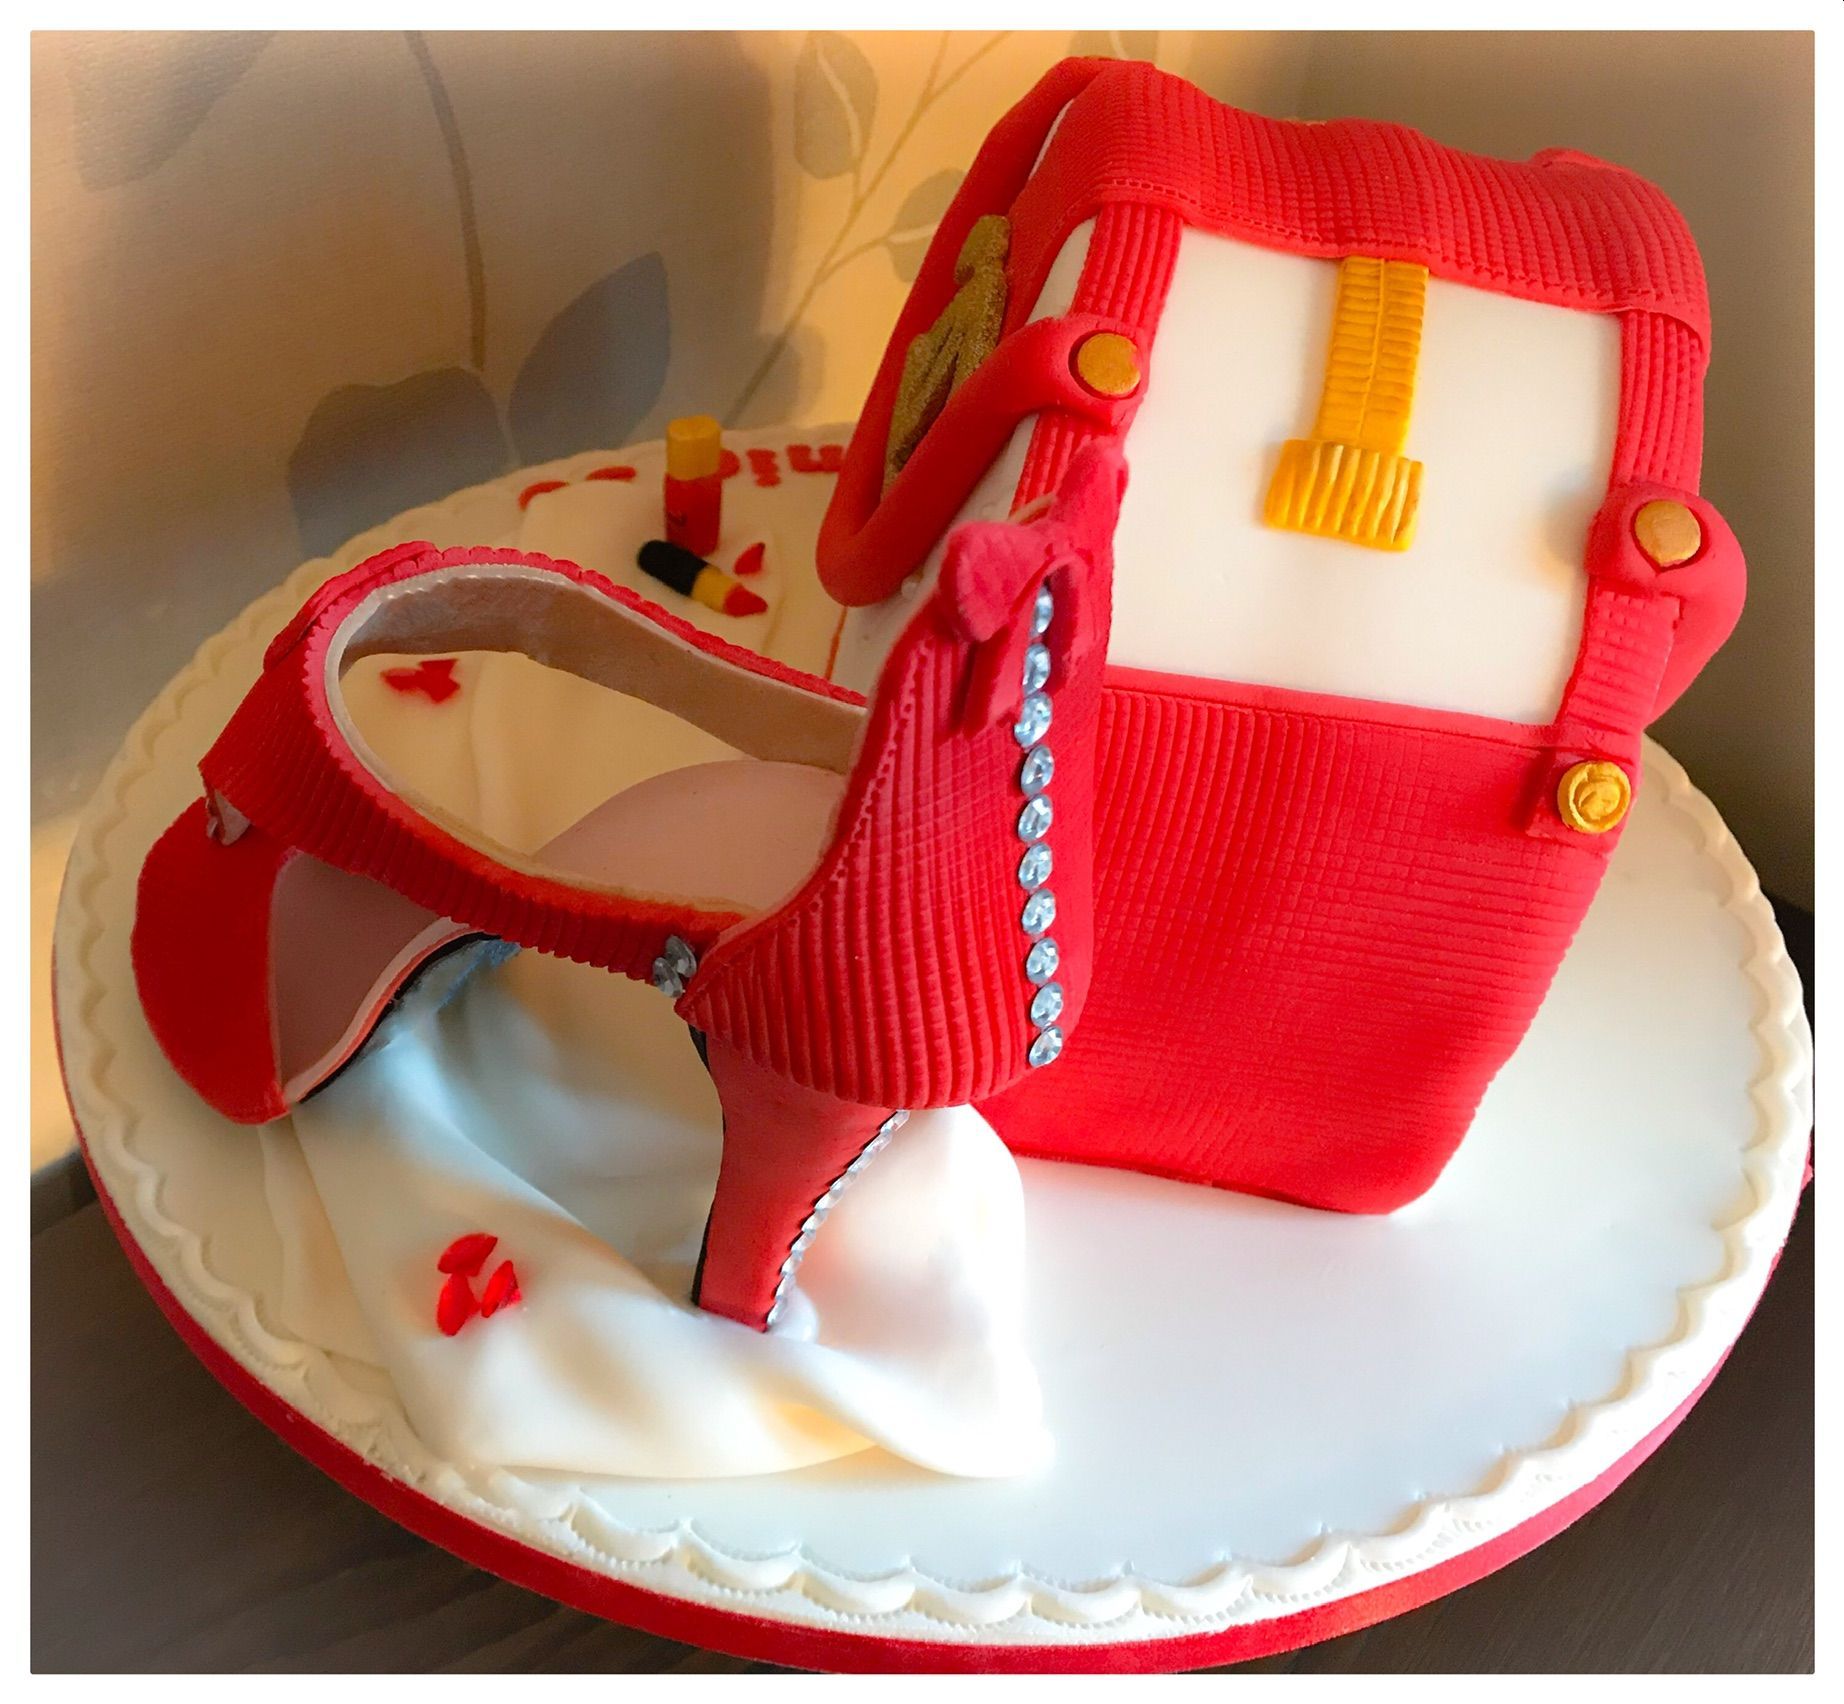 chanel handbag and shoe cake 1